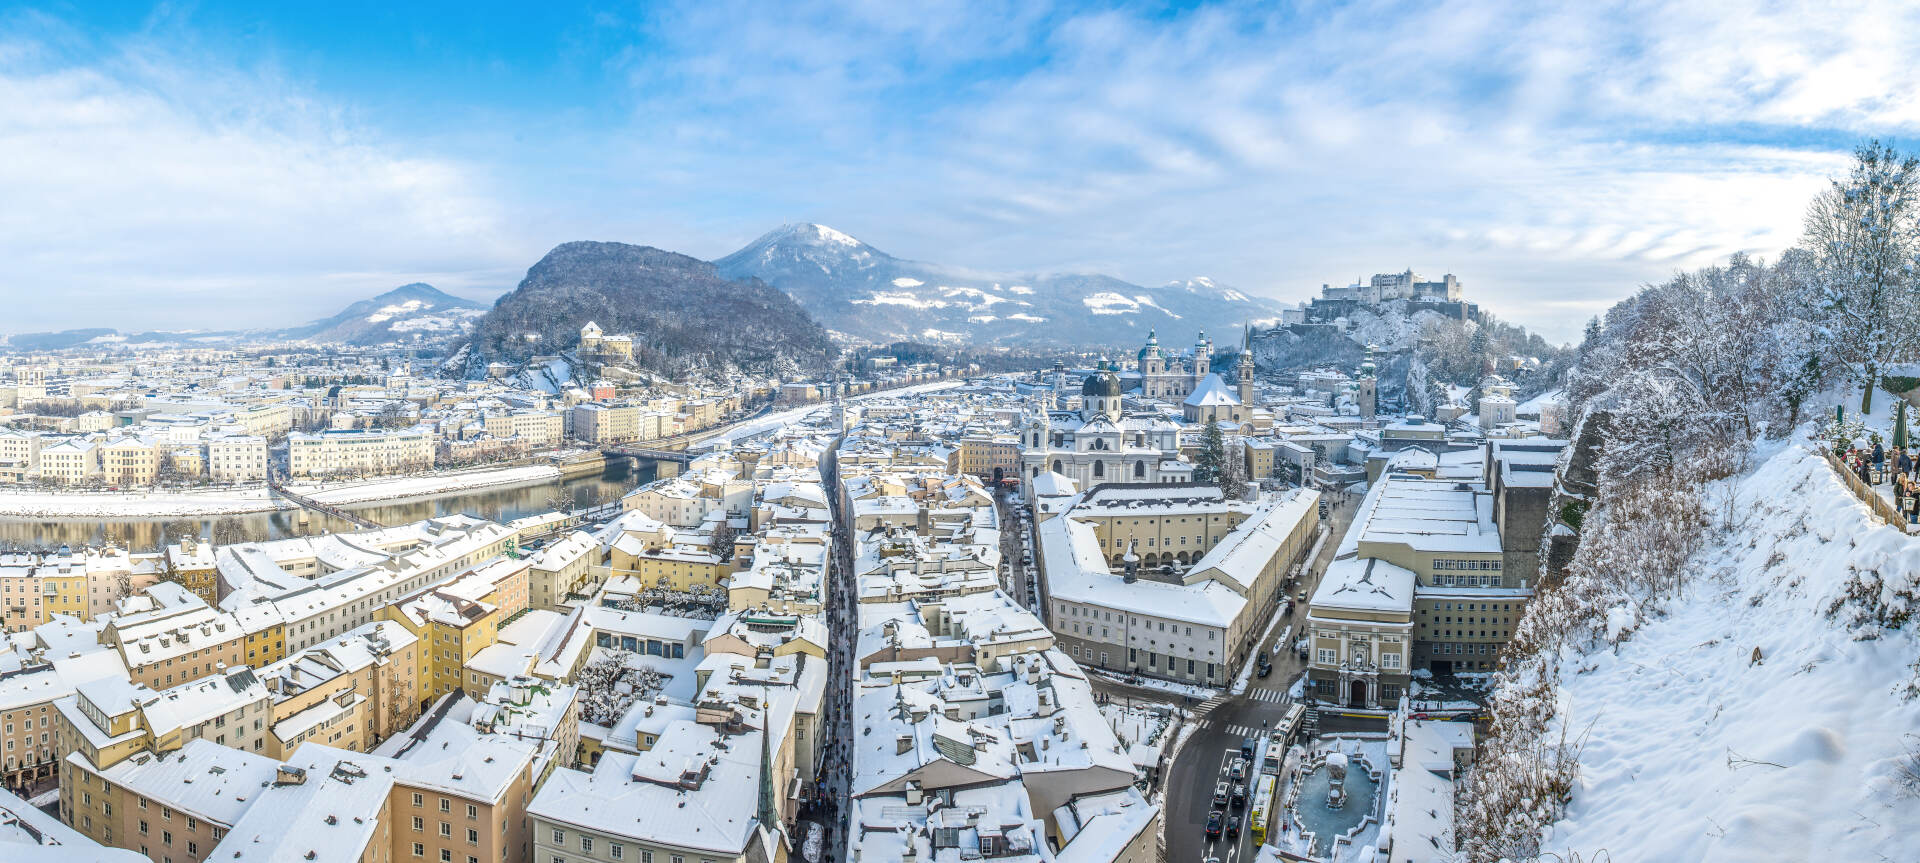 Salzburg in winter with Gaisberg in the background © Tourismus Salzburg GmbH